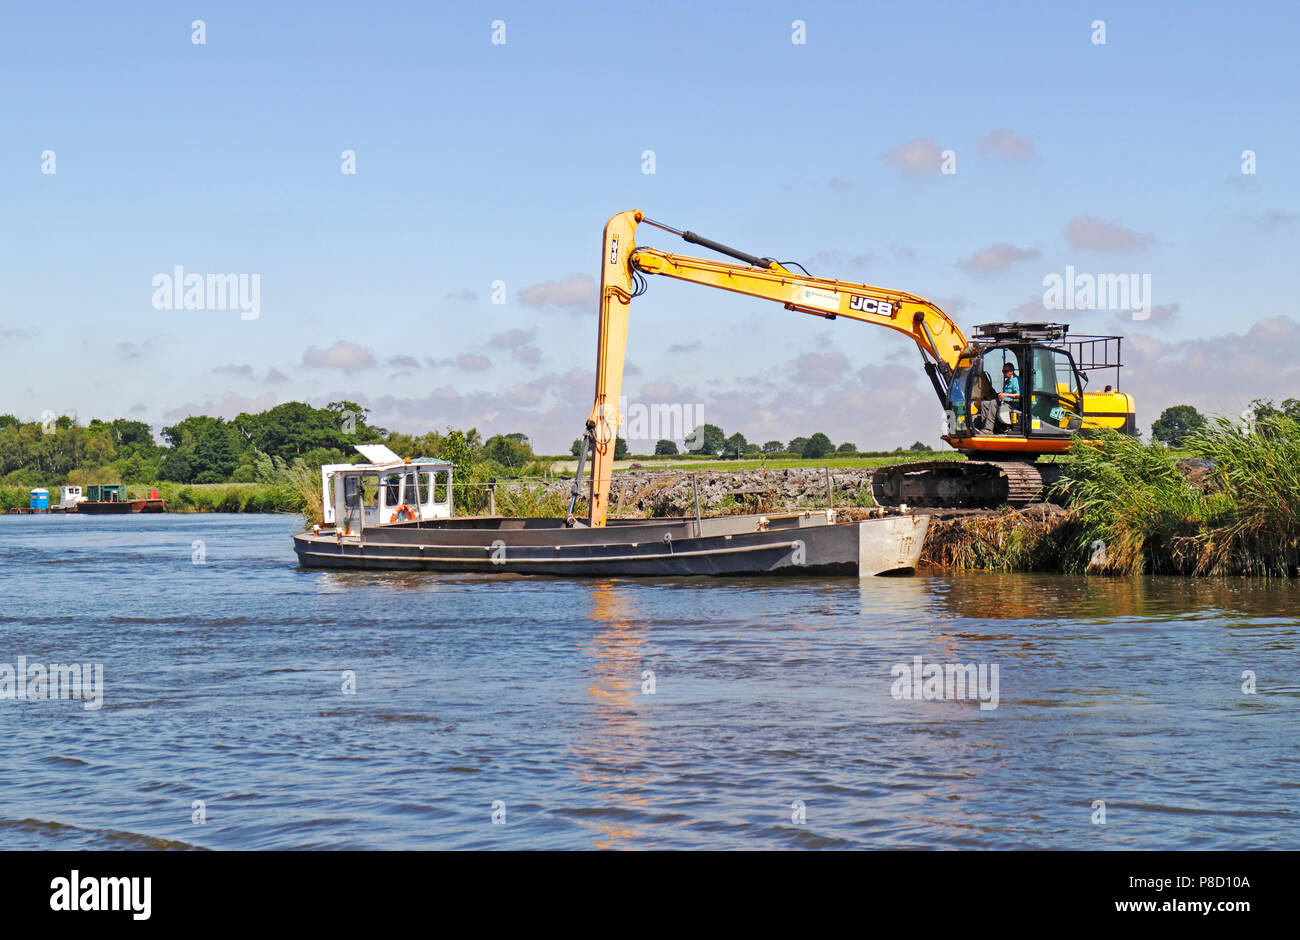 Ein JCB Entladen von Baggergut auf die Ufer des Flusses Bure auf der Norfolk Broads in Horning, Norfolk, England, Vereinigtes Königreich, Europa. Stockfoto